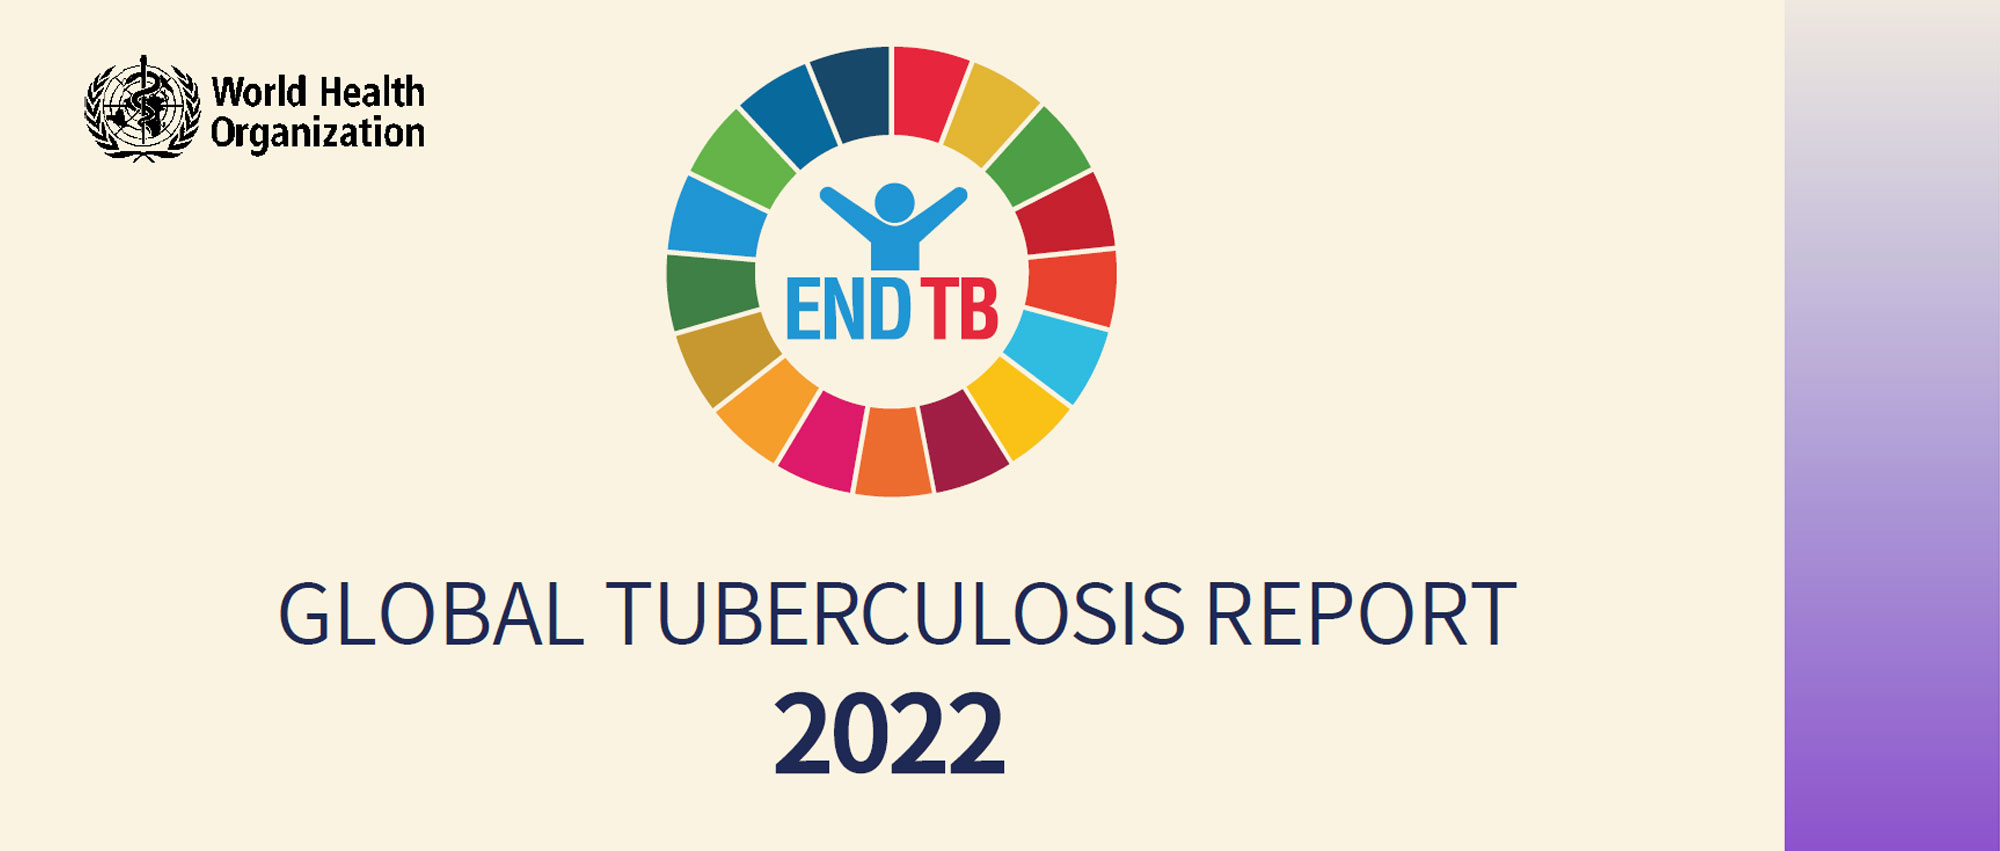 EndTB丨快速了解《2022年全球结核病报告》中的关键数据